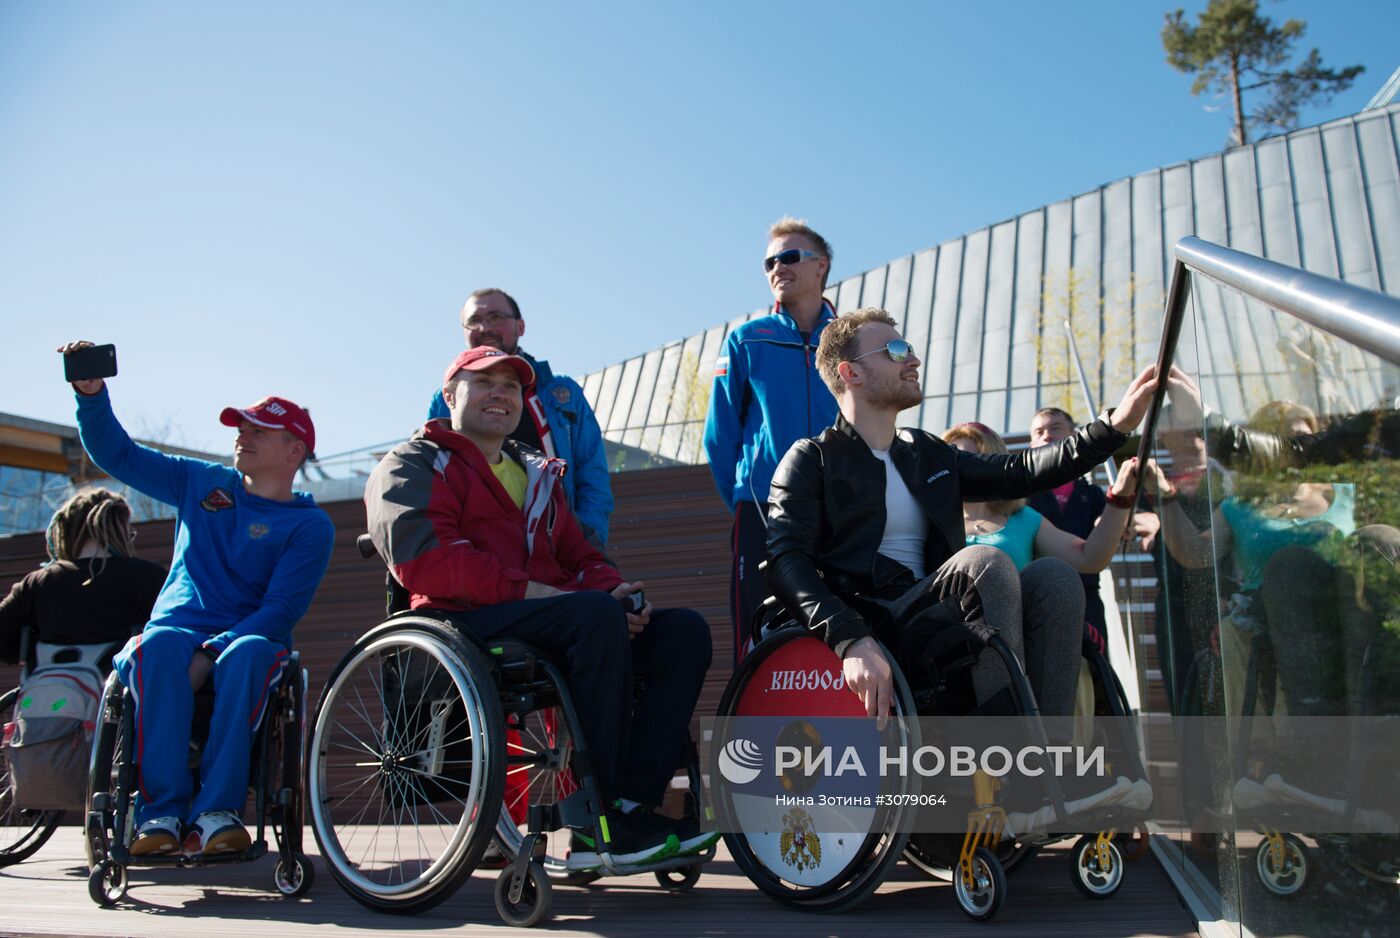 Паралимпийская сборная России по велоспорту посетила Скайпарк в Сочи